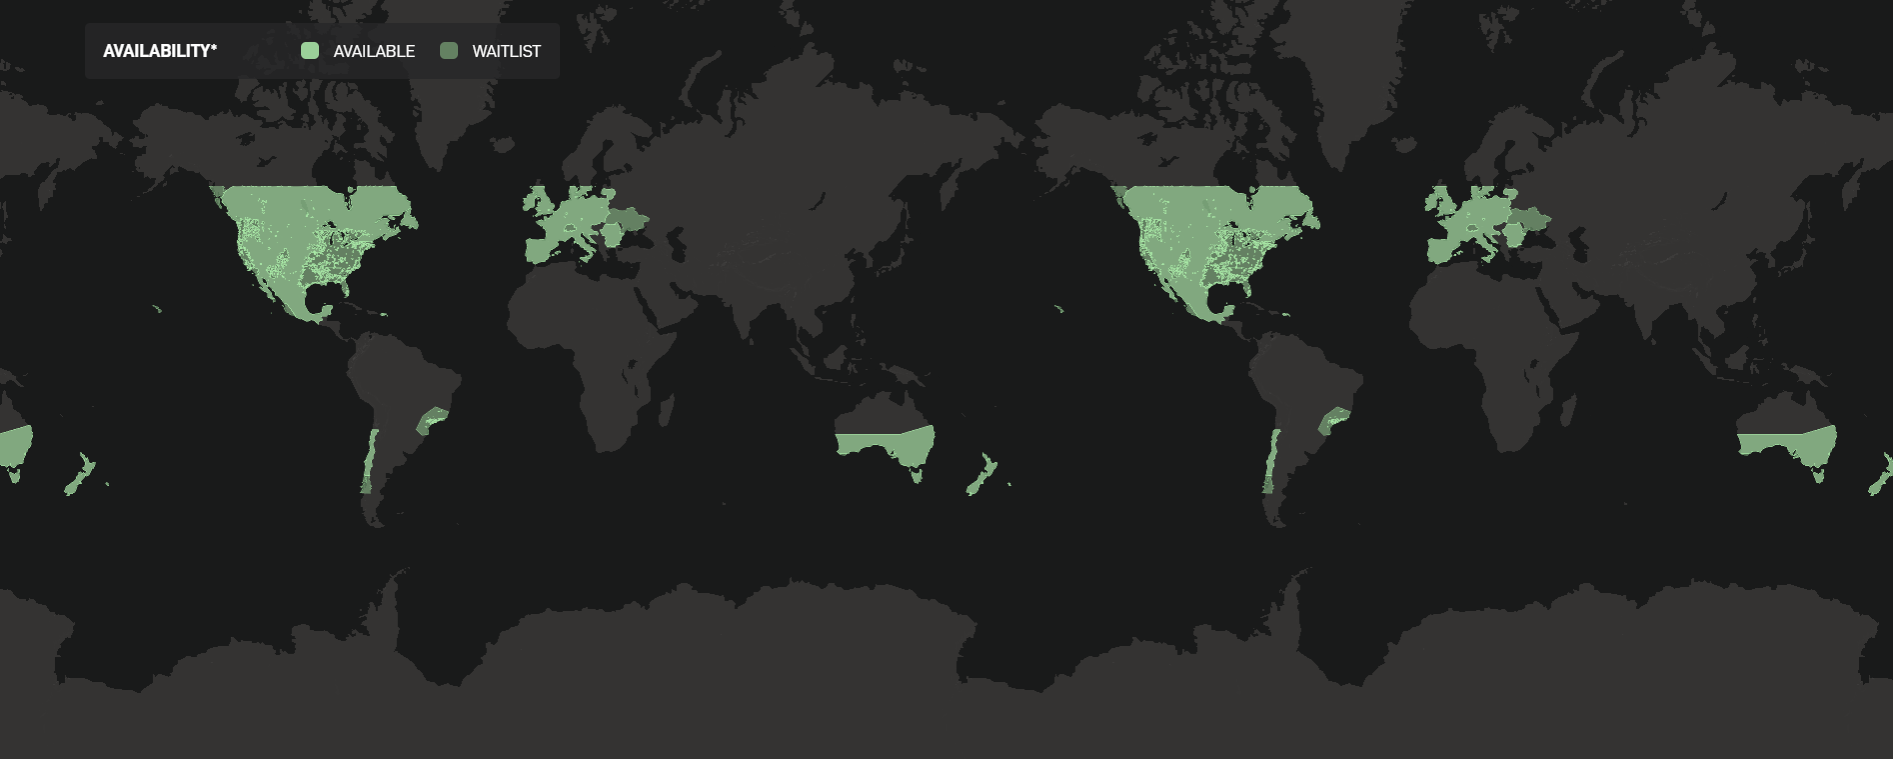 نقشه کشورهای تحت پوشش اینترنت استارلینک را ببینید